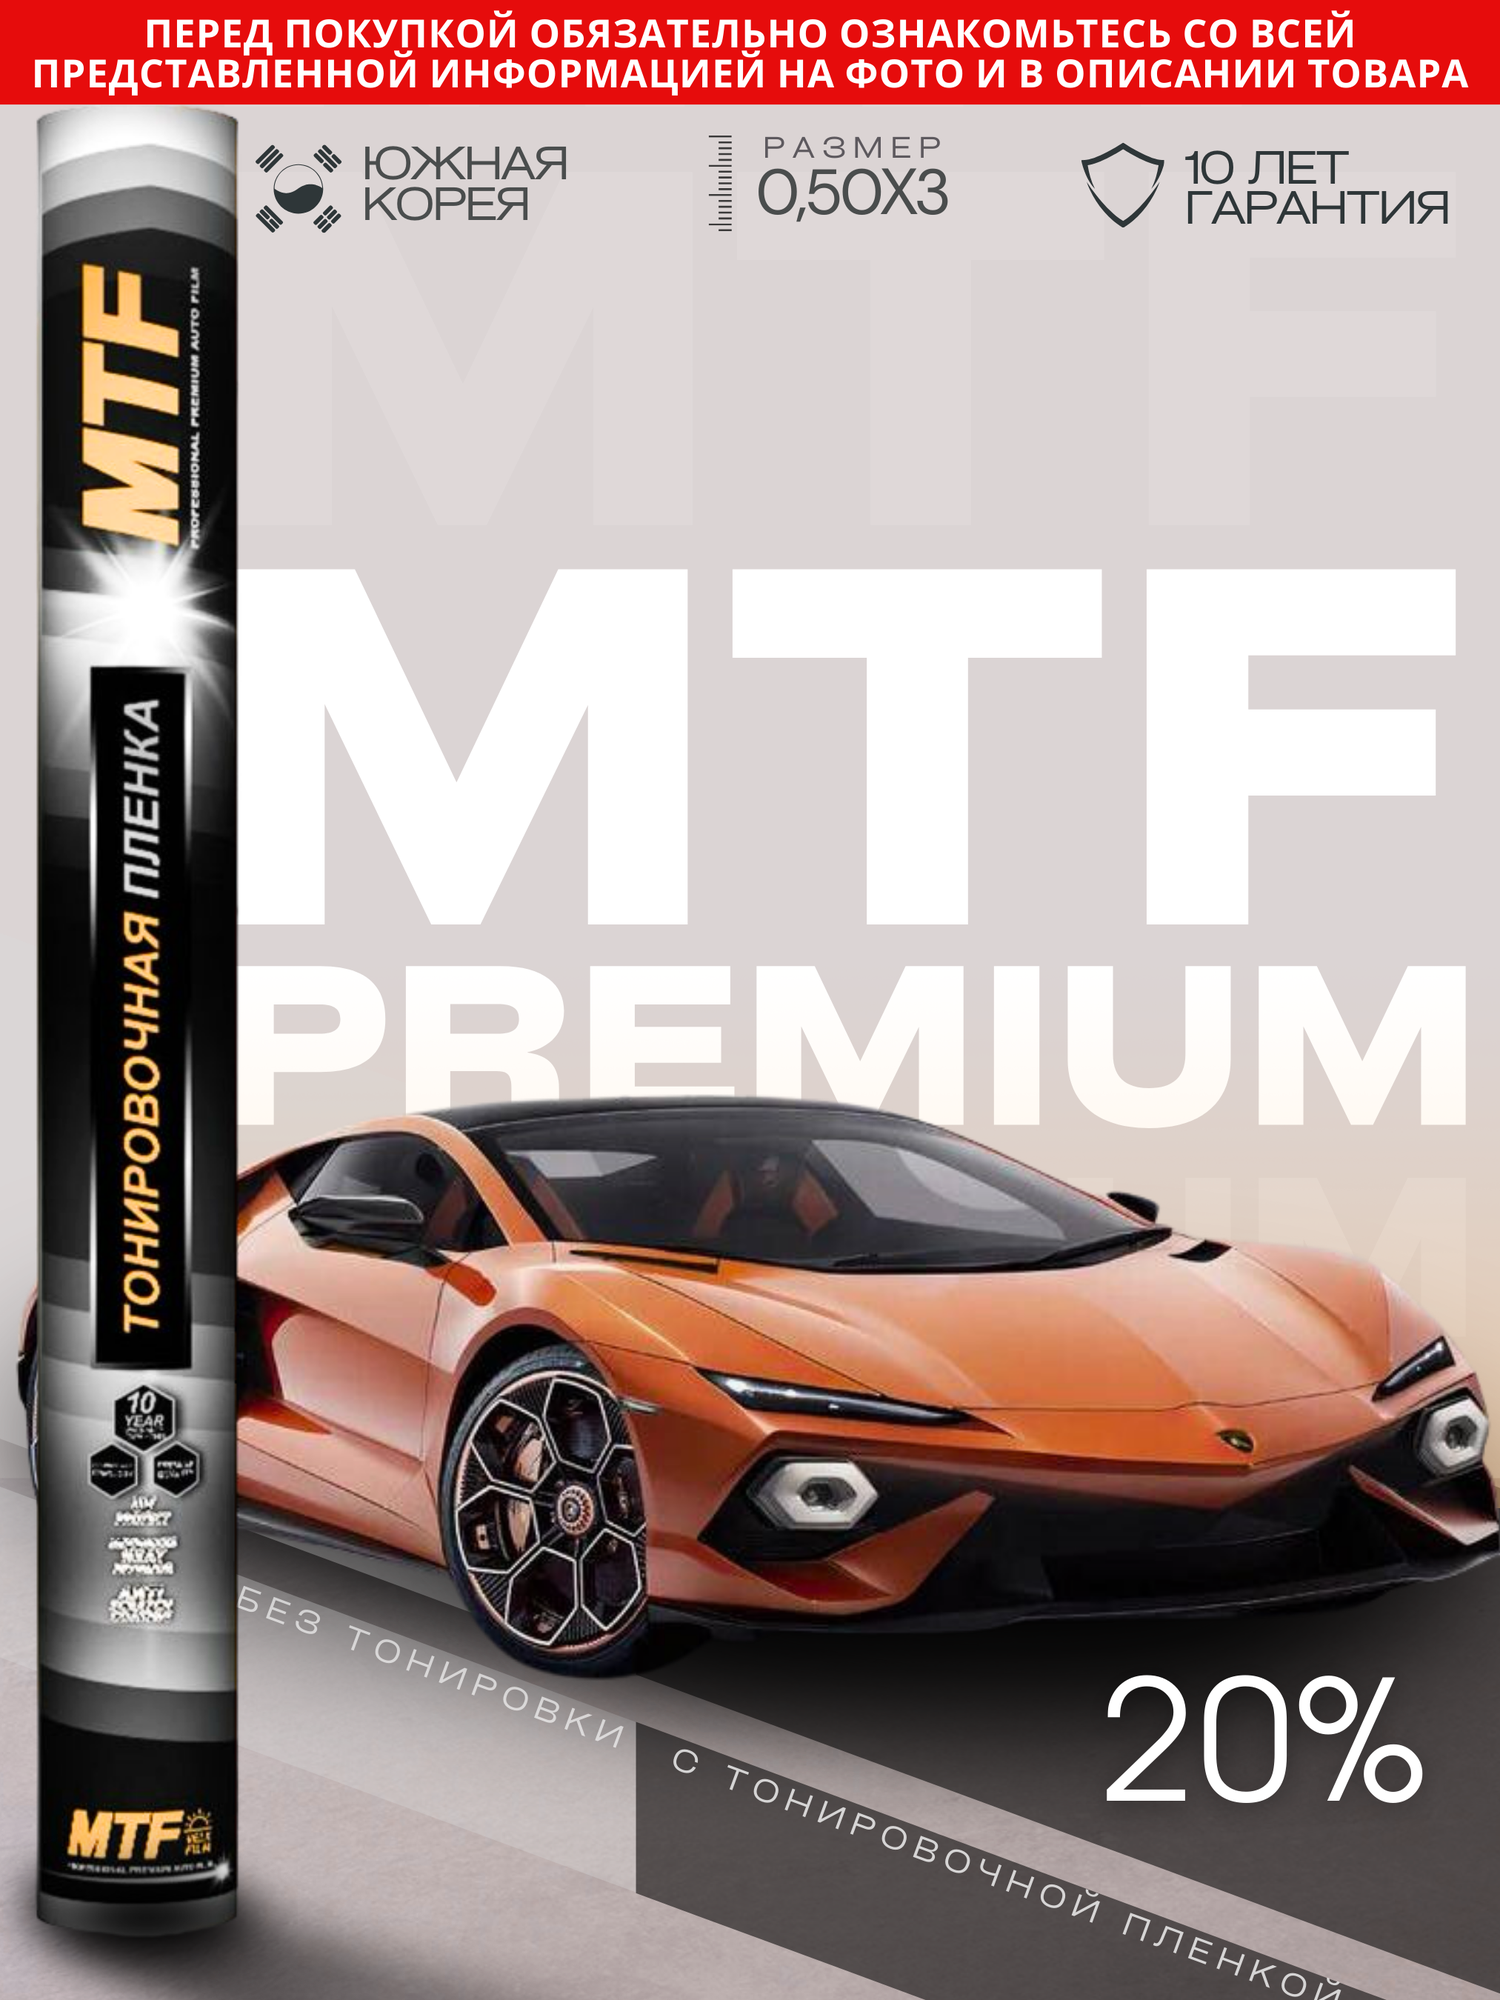 Пленка тонировочная "MTF Original" в тубе "Premium" 05% Сharcol (05м х 3м)